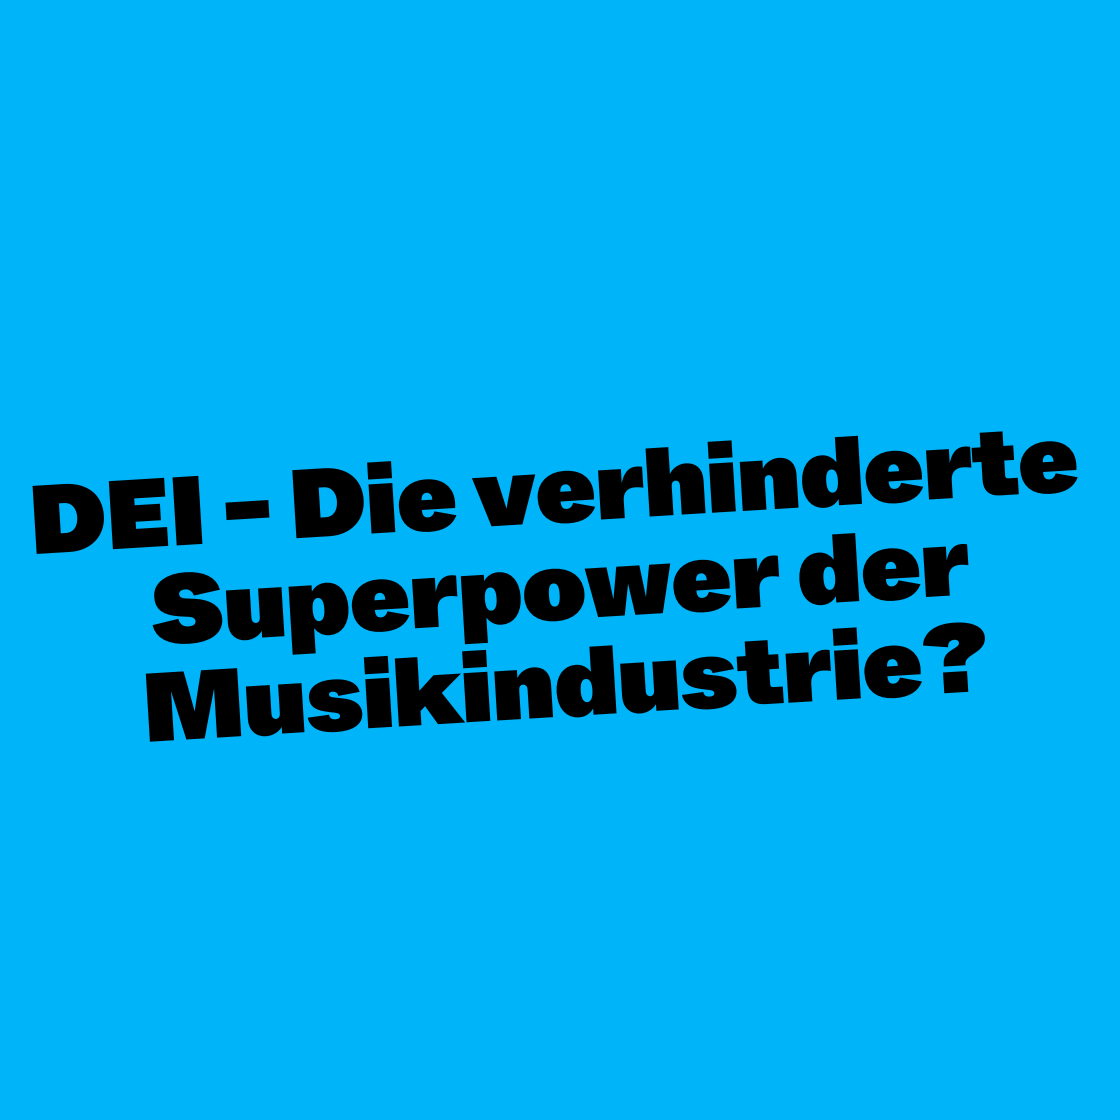 DEI - Die verhinderte Superpower der Musikindustrie?